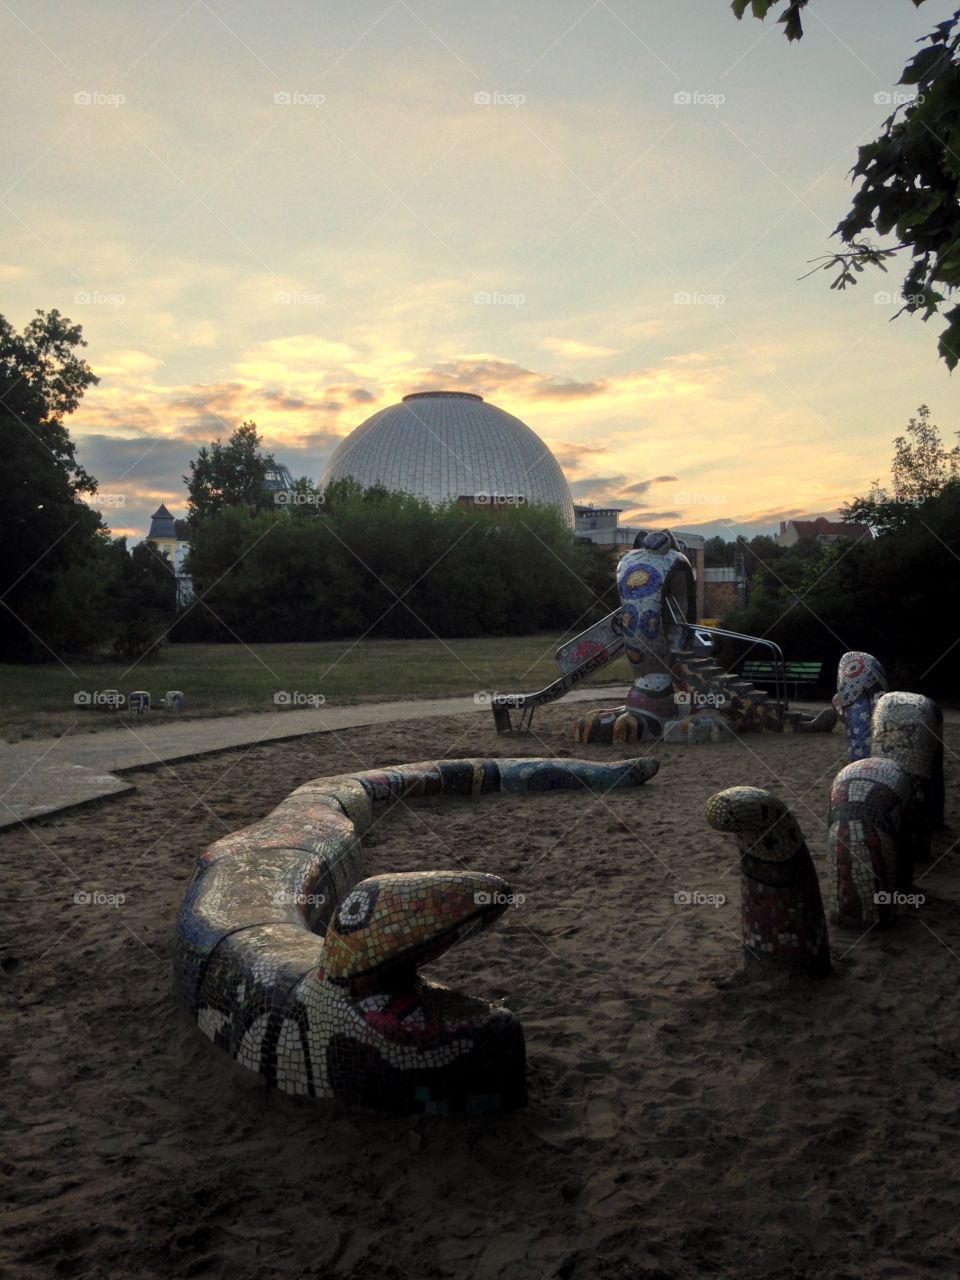 Spielplatz. A playground near a Planetarium in Berlin.